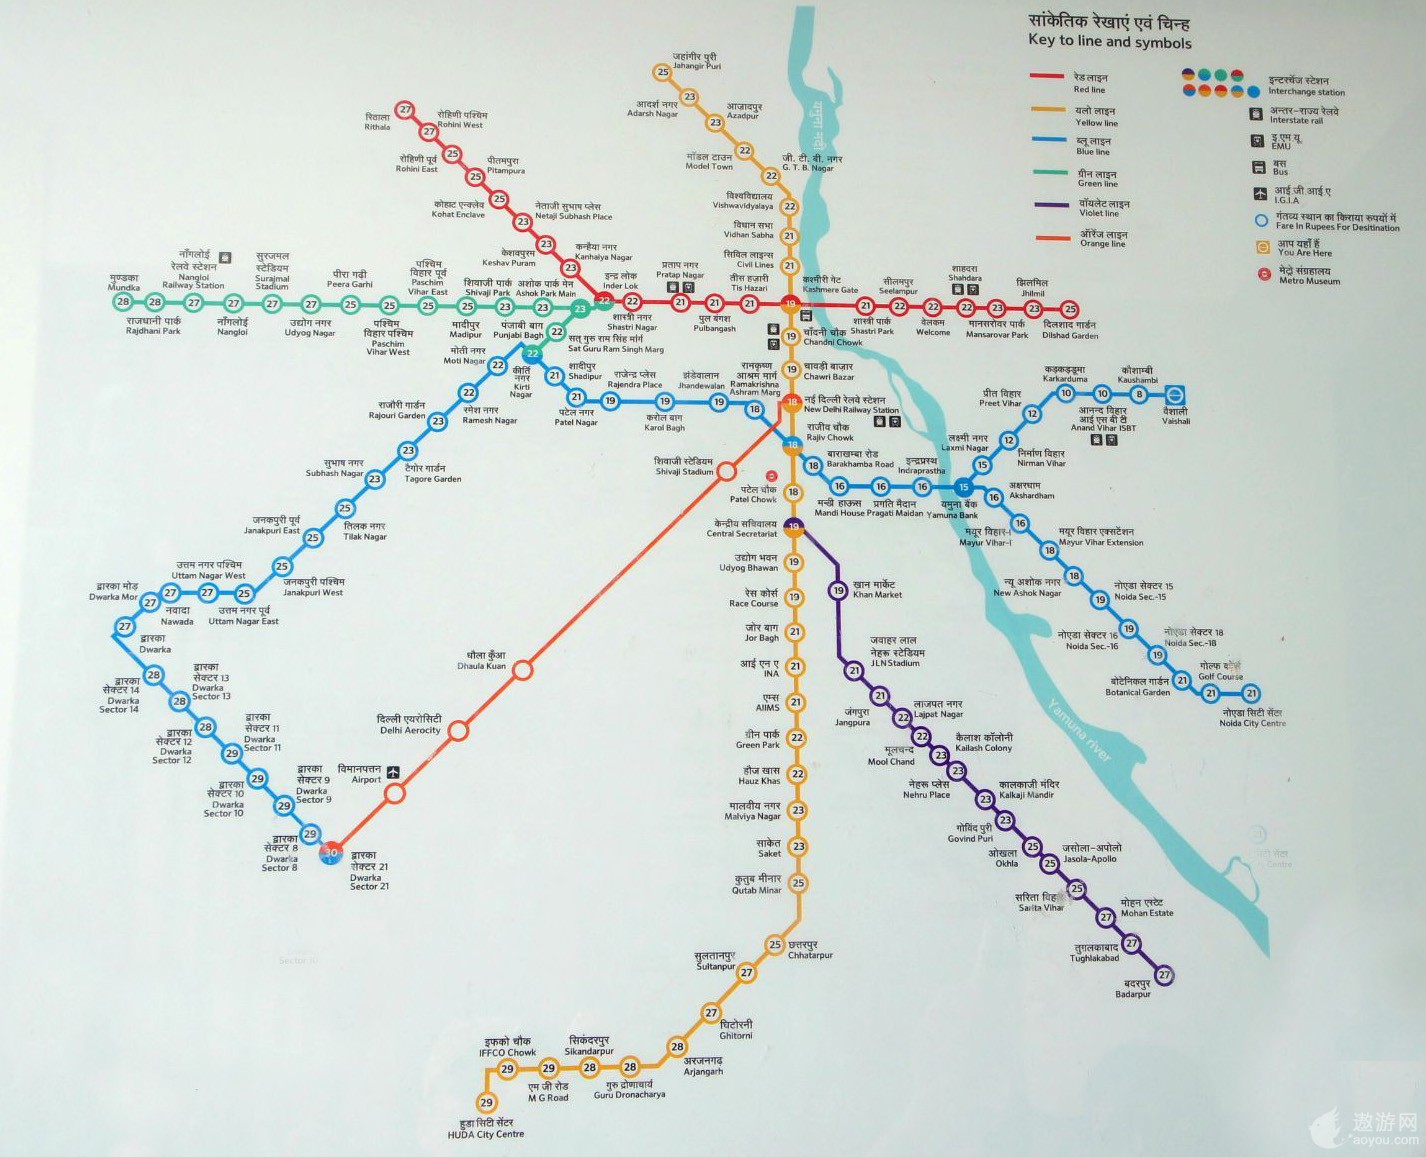 期待！中泰高铁一期即将完工，预计2022年通车，单程350元到曼谷！ - 知乎